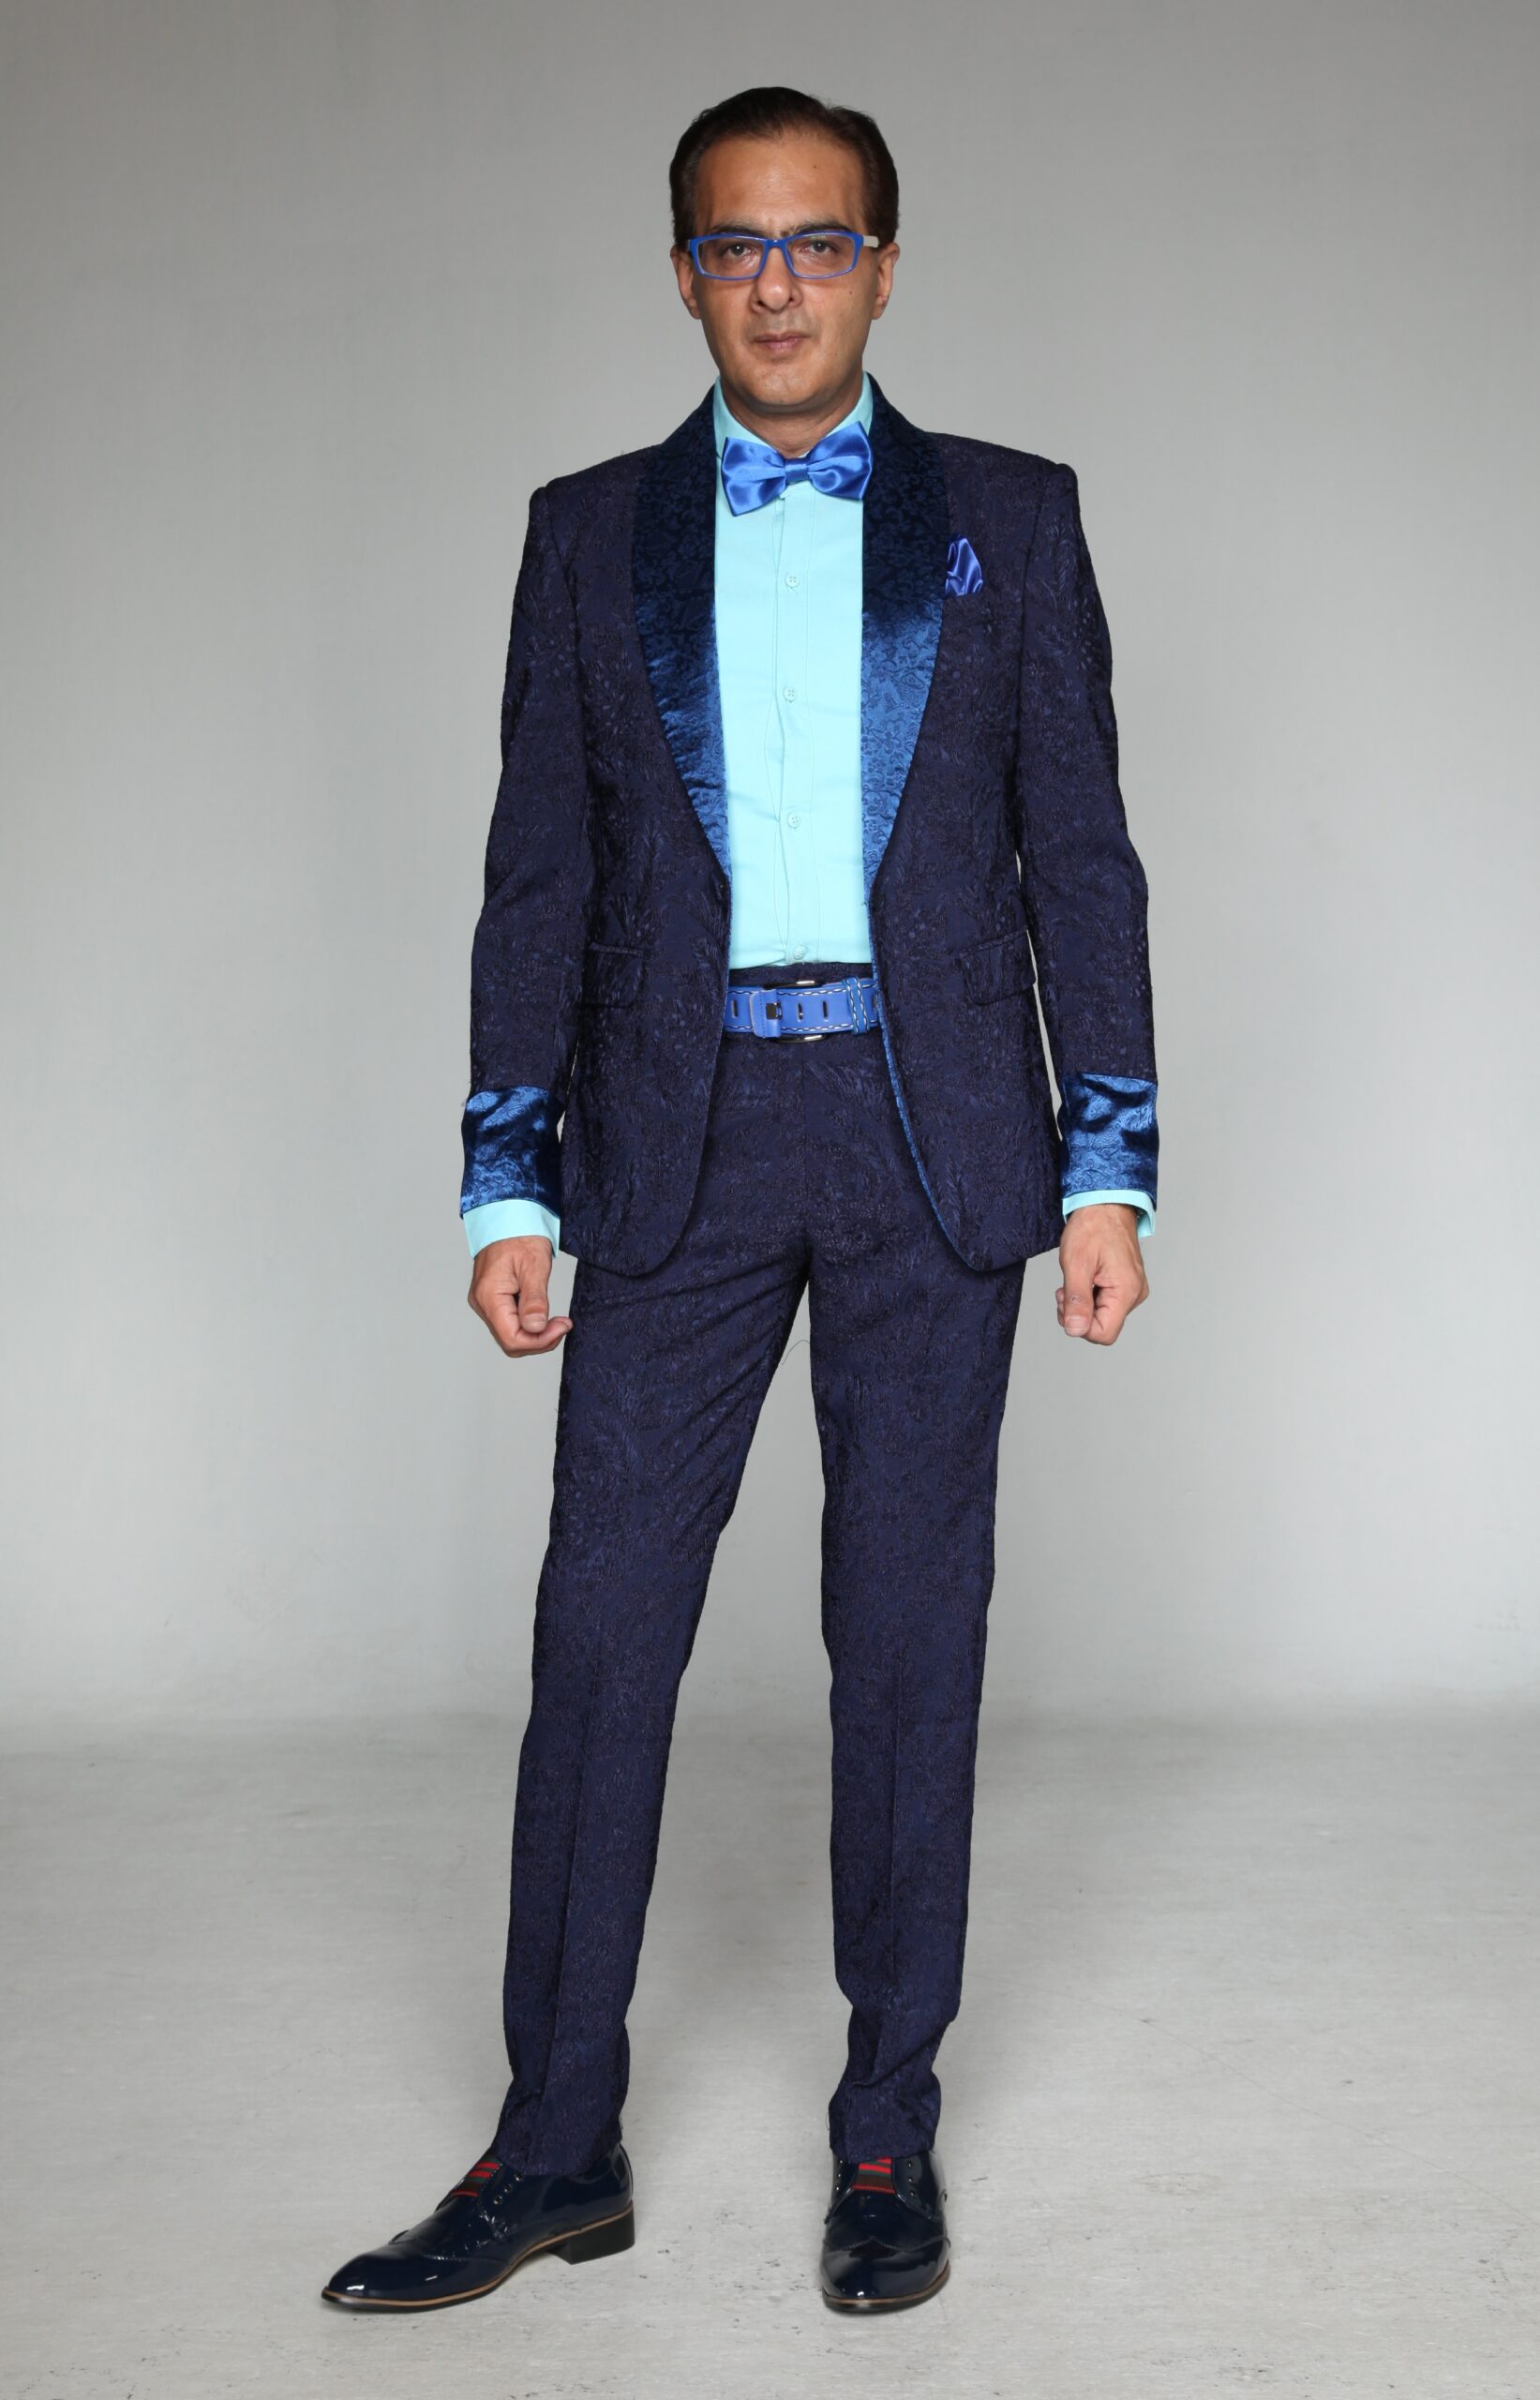 MST-5023-02-rent_rental_hire_tuxedo_suit_black_tie_suit_designer_suits_shop_tailor_tailors_singapore_wedding